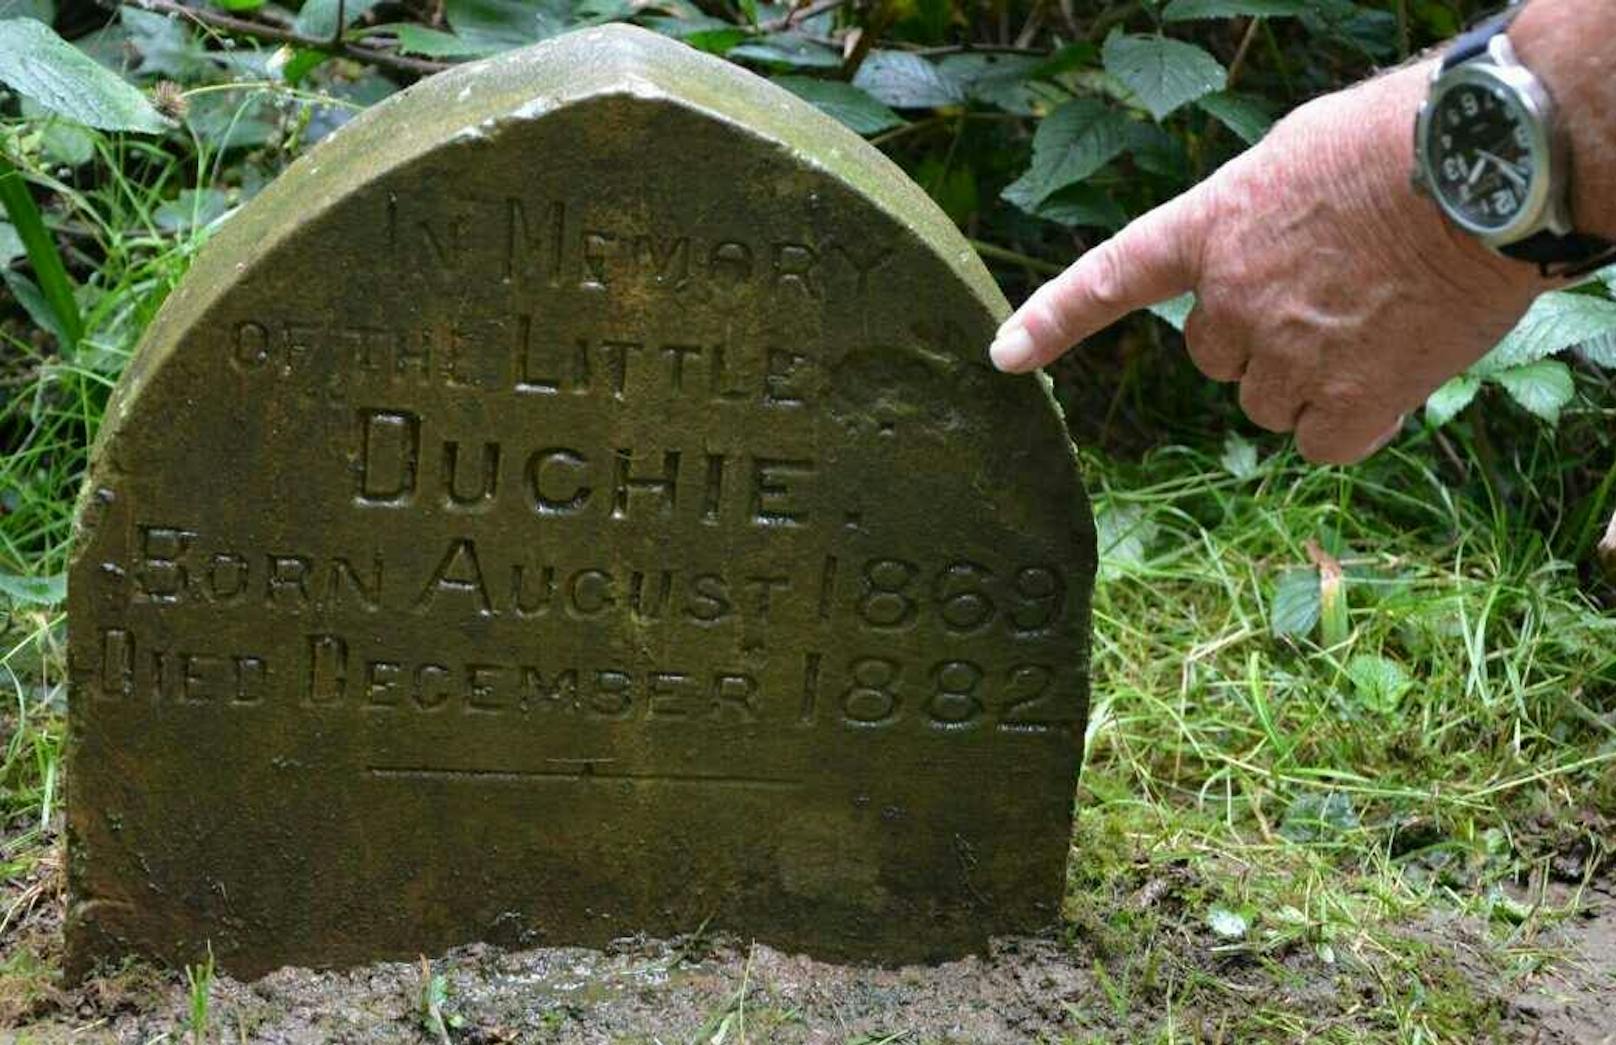 Offenbar wurde hier 1882 ein kleines Kaninchen namens "Duchie" vergraben. 